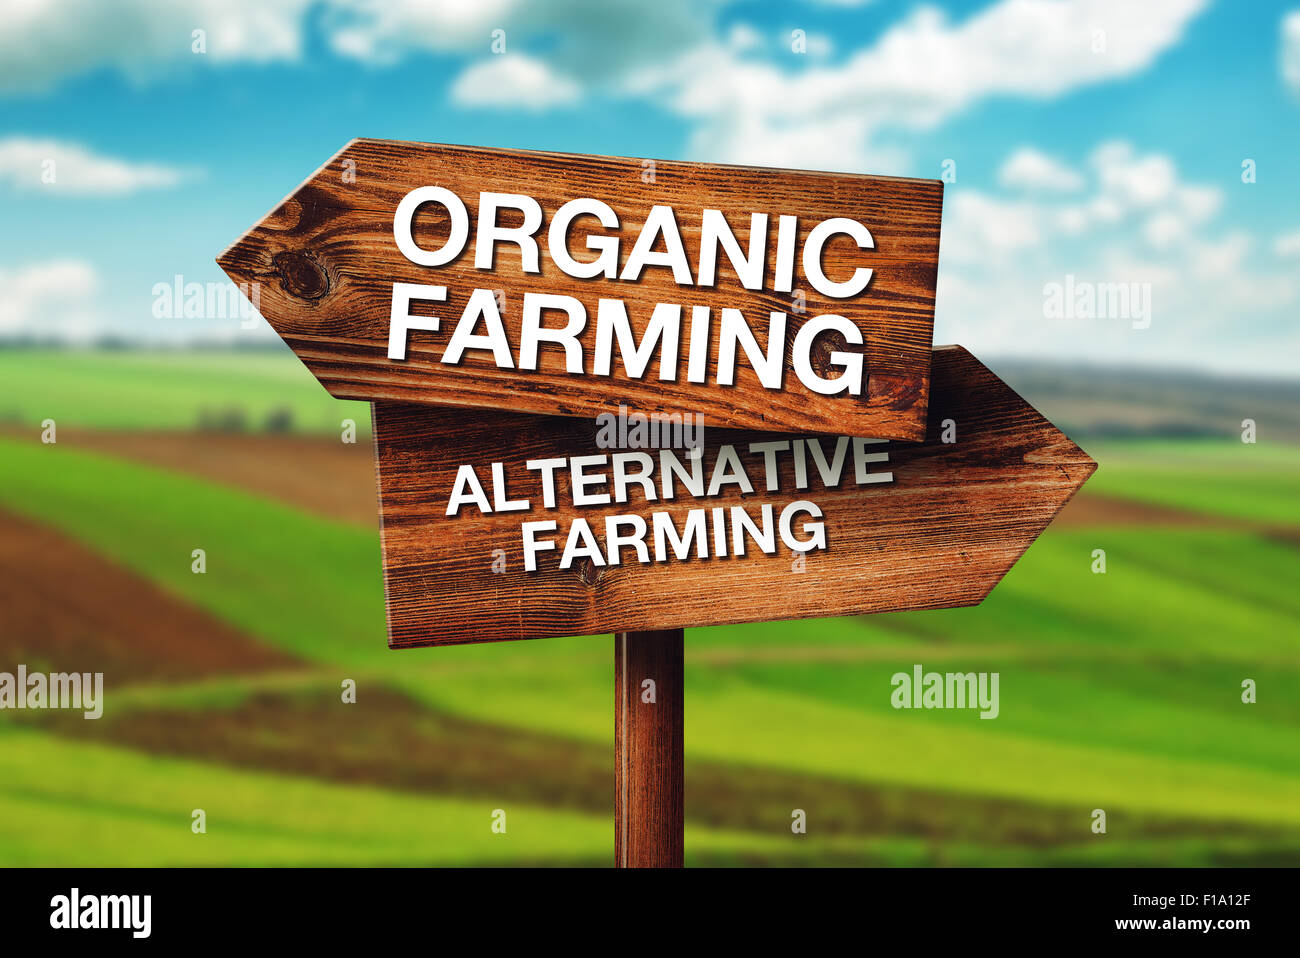 Agricultura orgánica o alternativa, el concepto de elección en la producción agrícola, al cultivo de las tierras cultivadas en segundo plano. Foto de stock